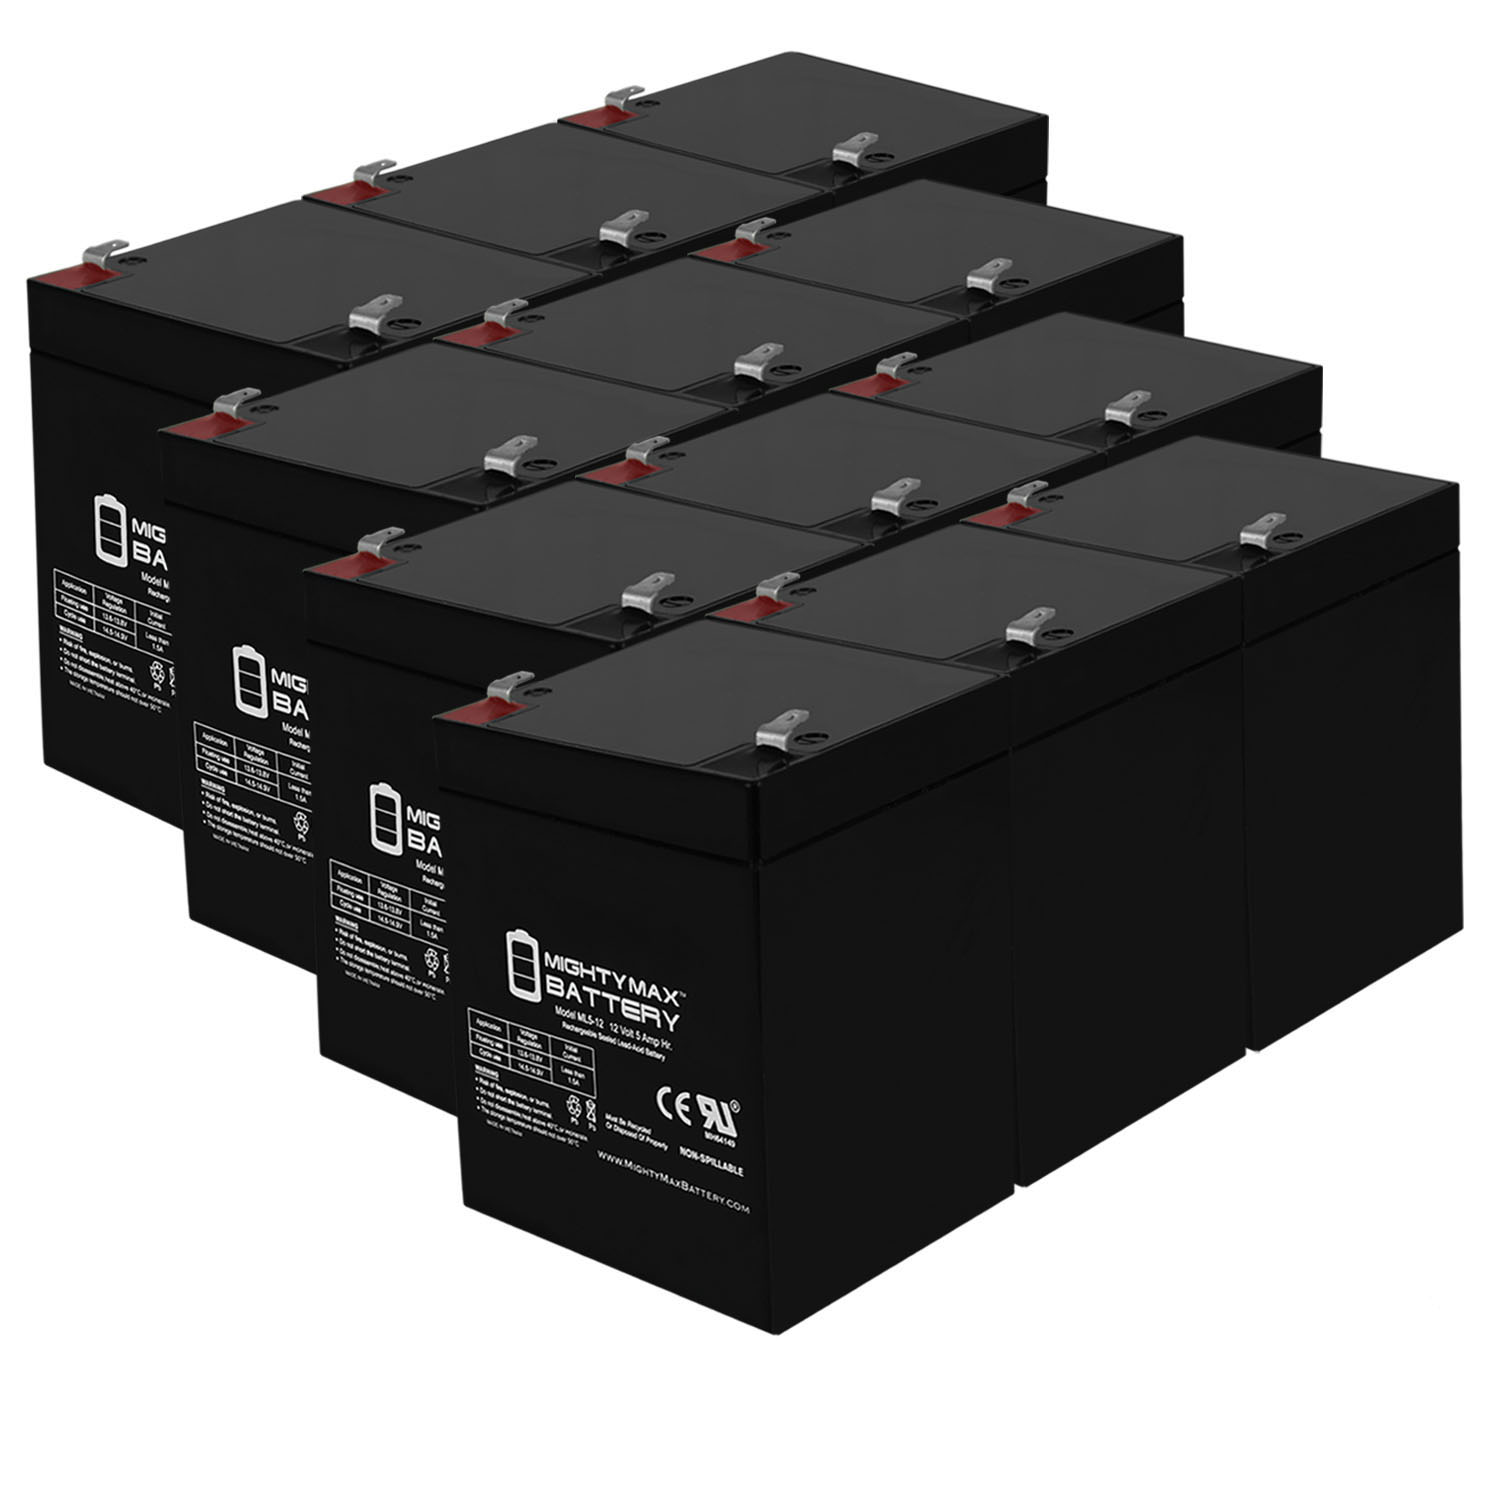 12V 5AH SLA Replacement Battery for HKbil 6FM4.5 - 12 Pack